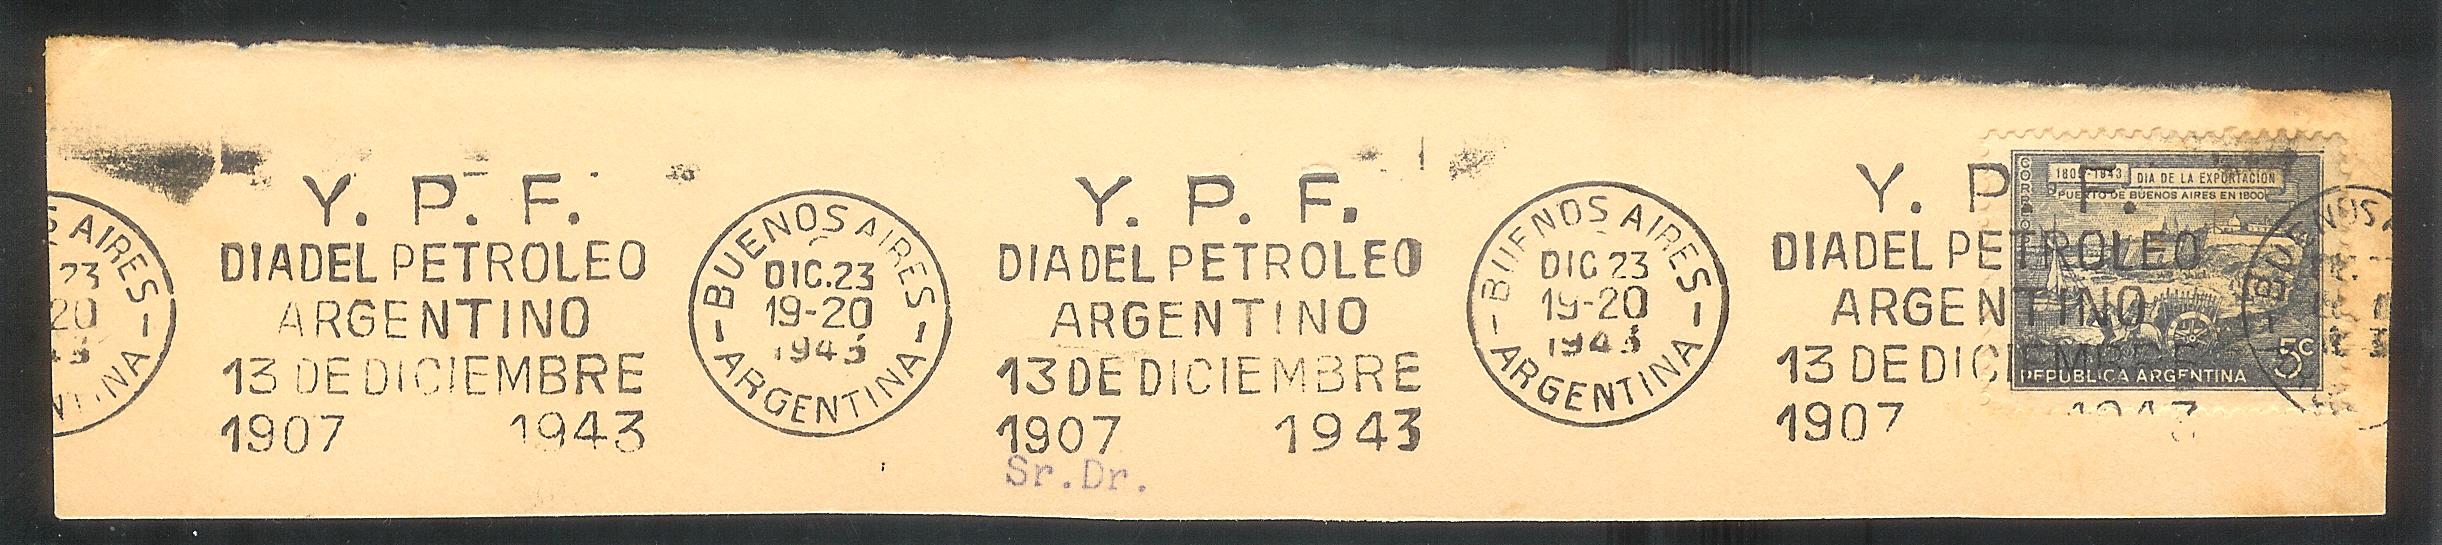 Bandaleta YPF 13 Dic 1943 001.jpg